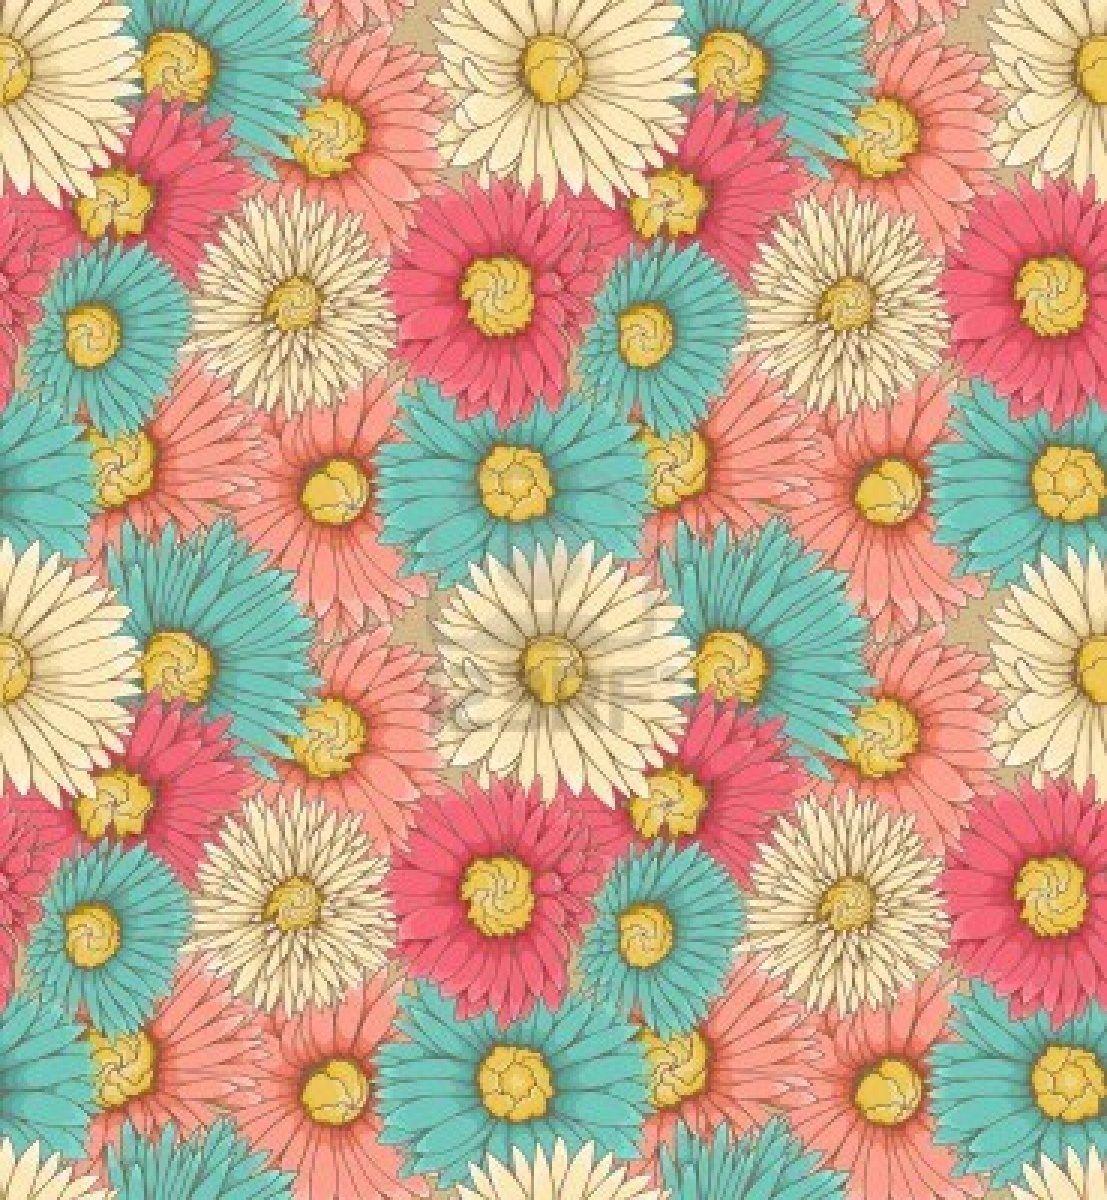 Flower Tumblr Wallpaper, Best Pics of Flower Tumblr High Quality